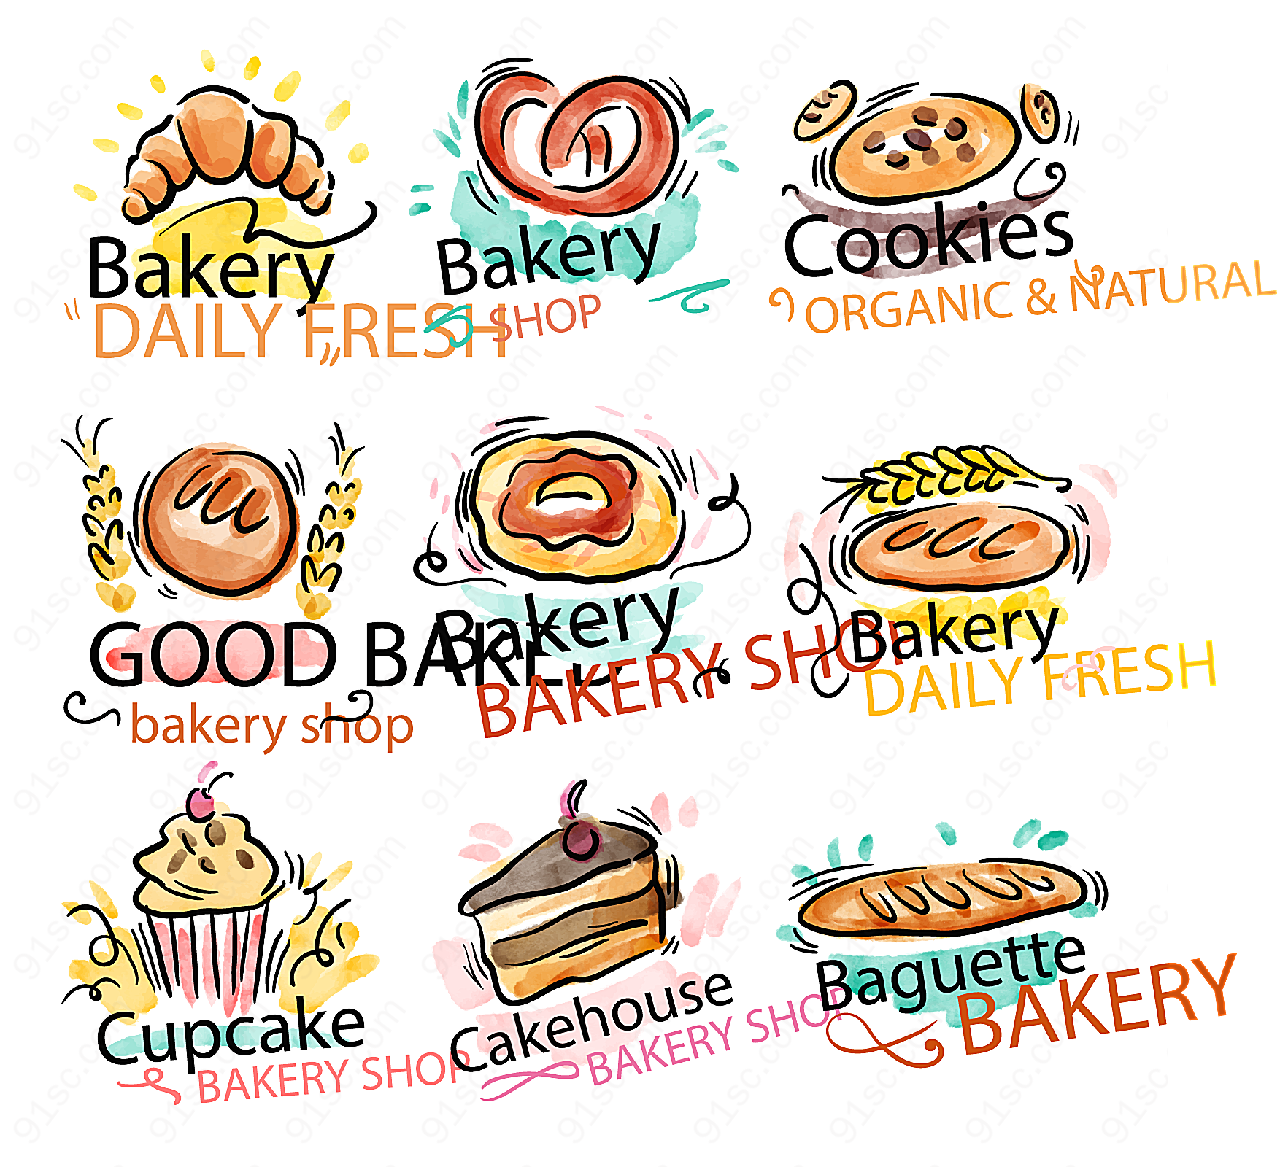 彩绘面包店标志矢量logo图形